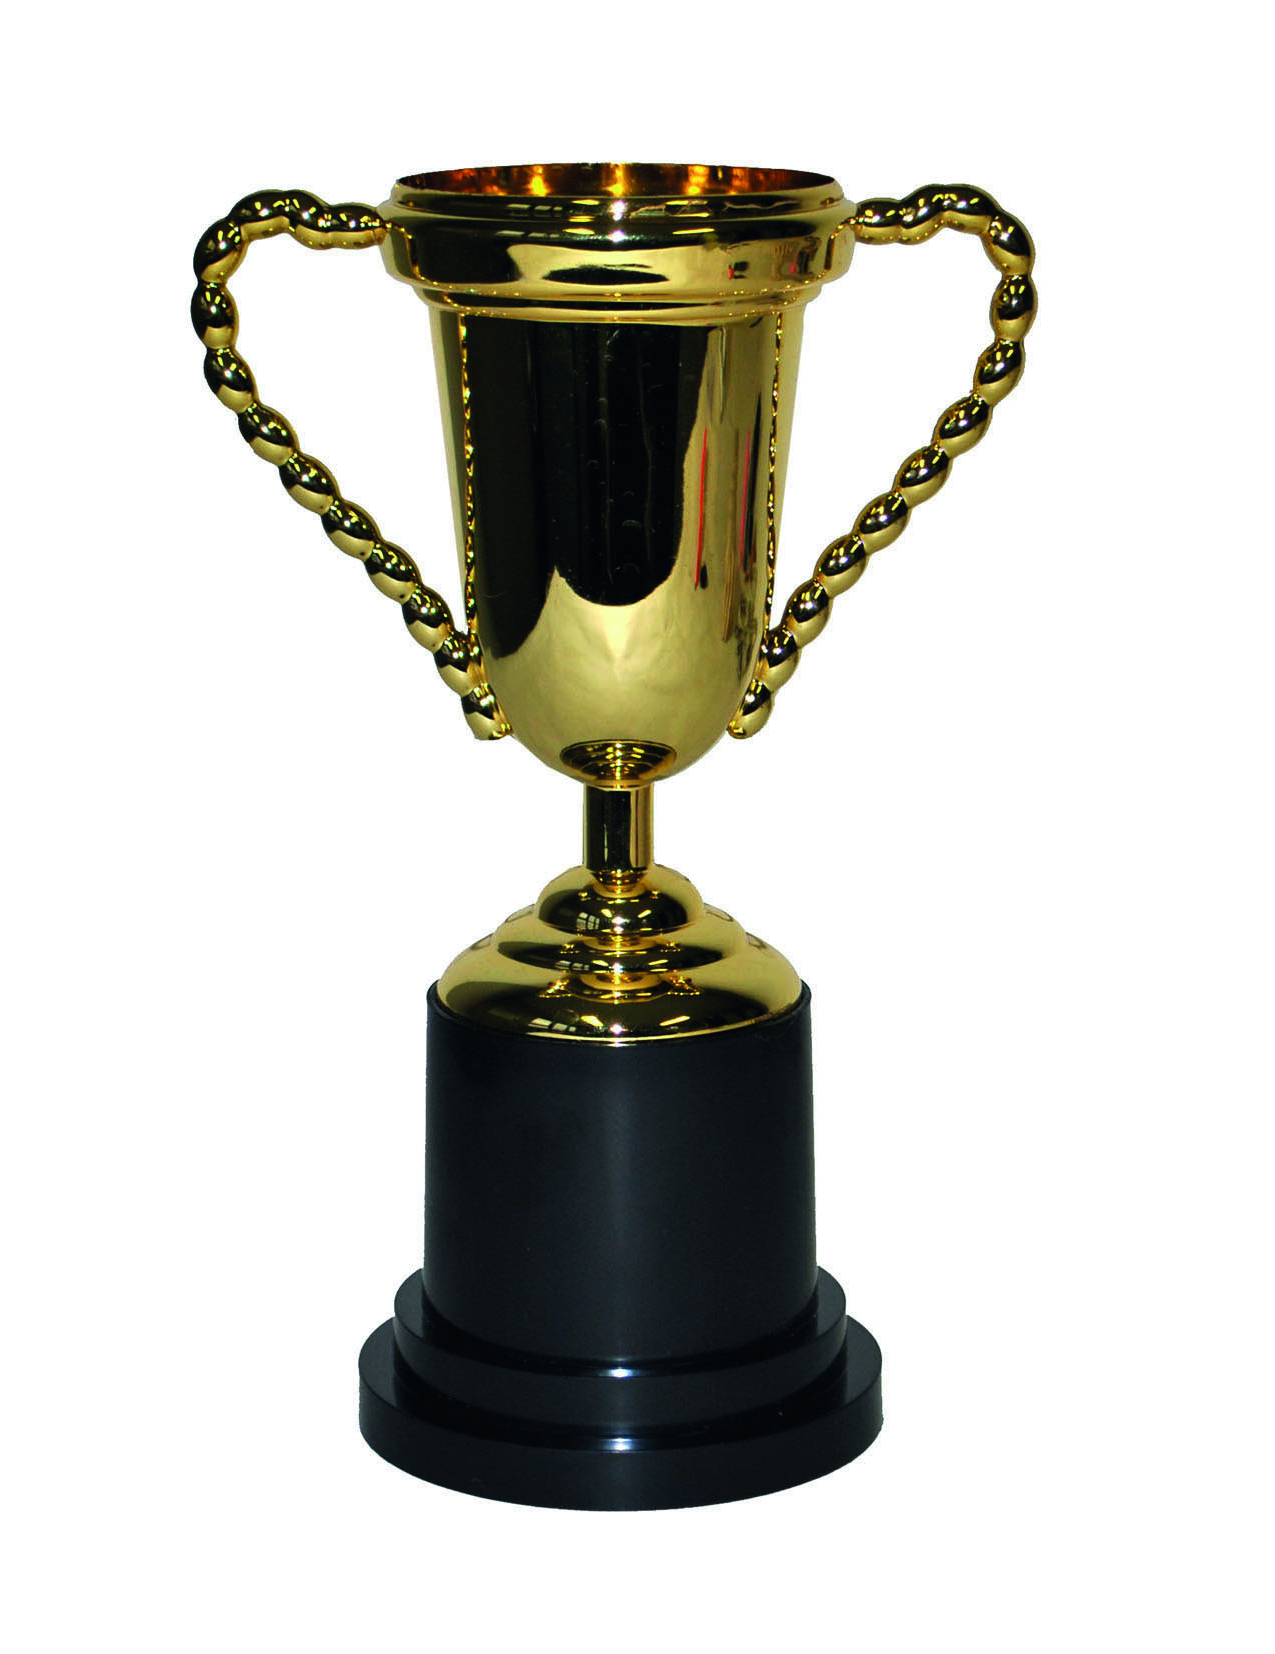 Trophäe Pokal gold-schwarz 25cm von ESPA